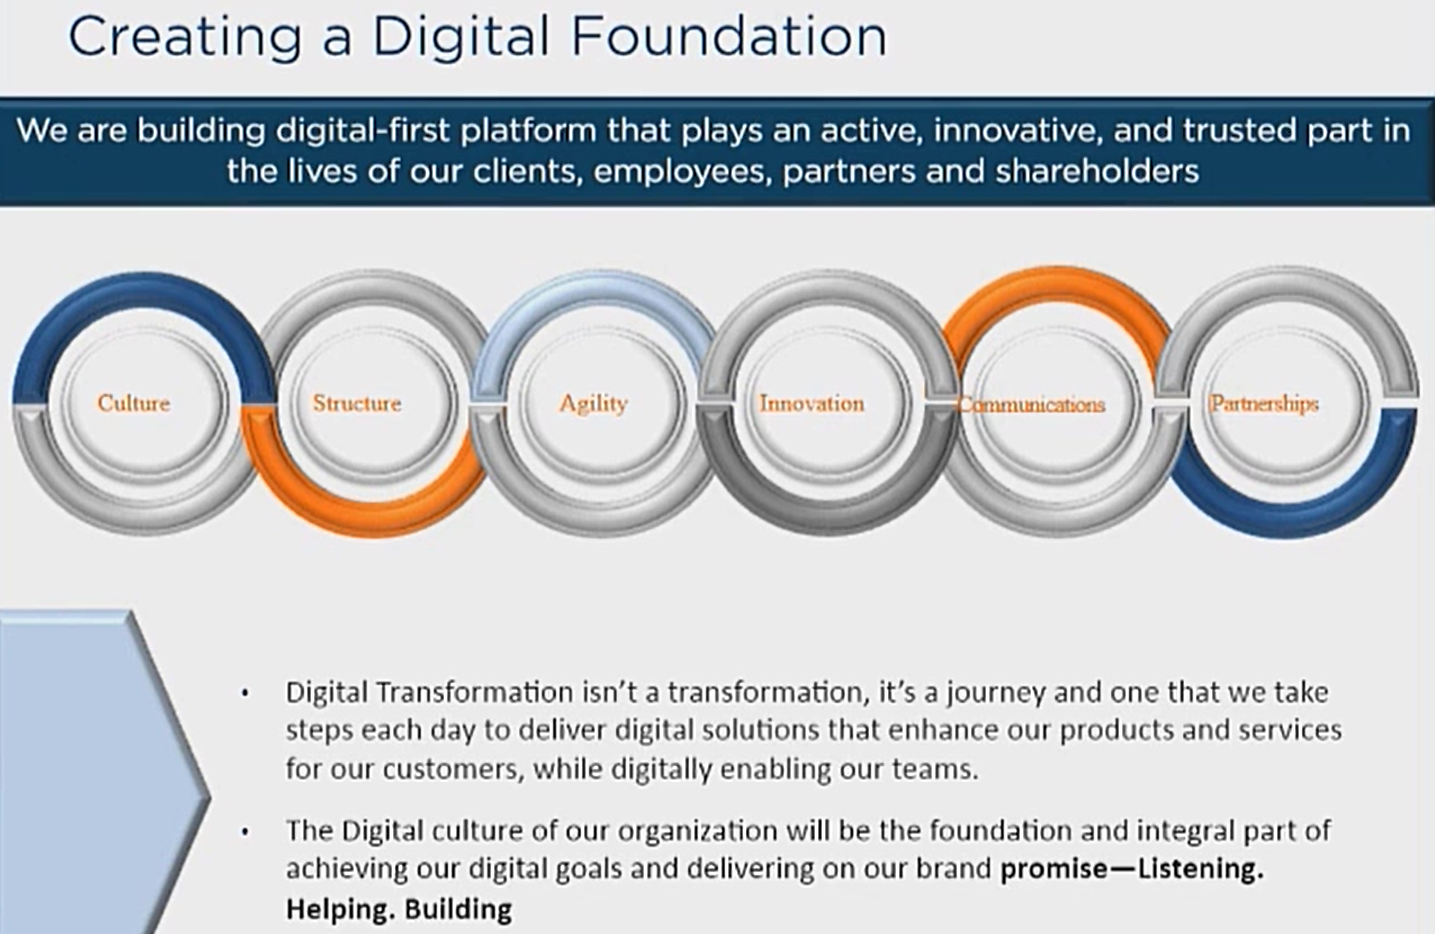 Creating a digital foundation